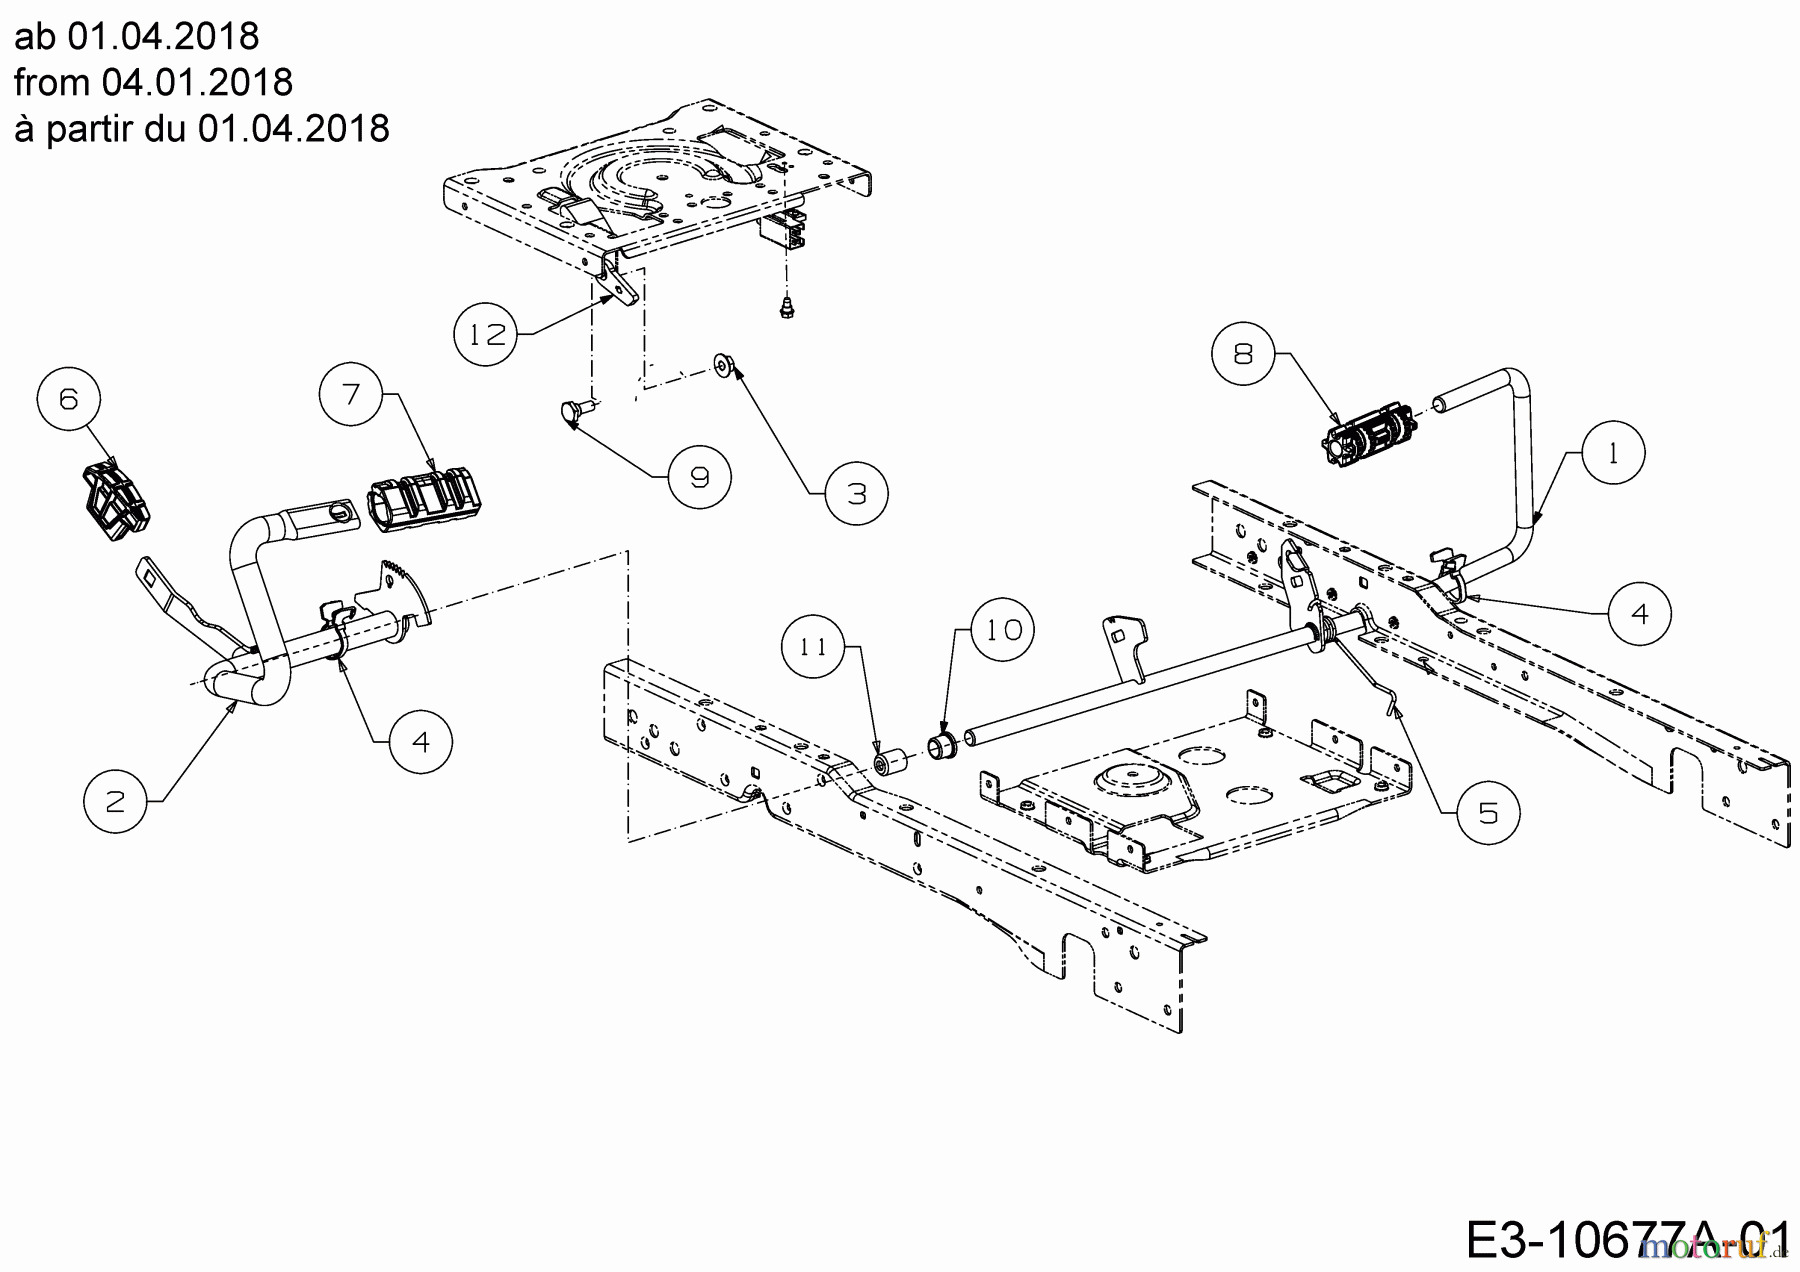  Cub Cadet Rasentraktoren XT2 PS117 13AGA1CT603  (2018) Pedale ab 01.04.2018